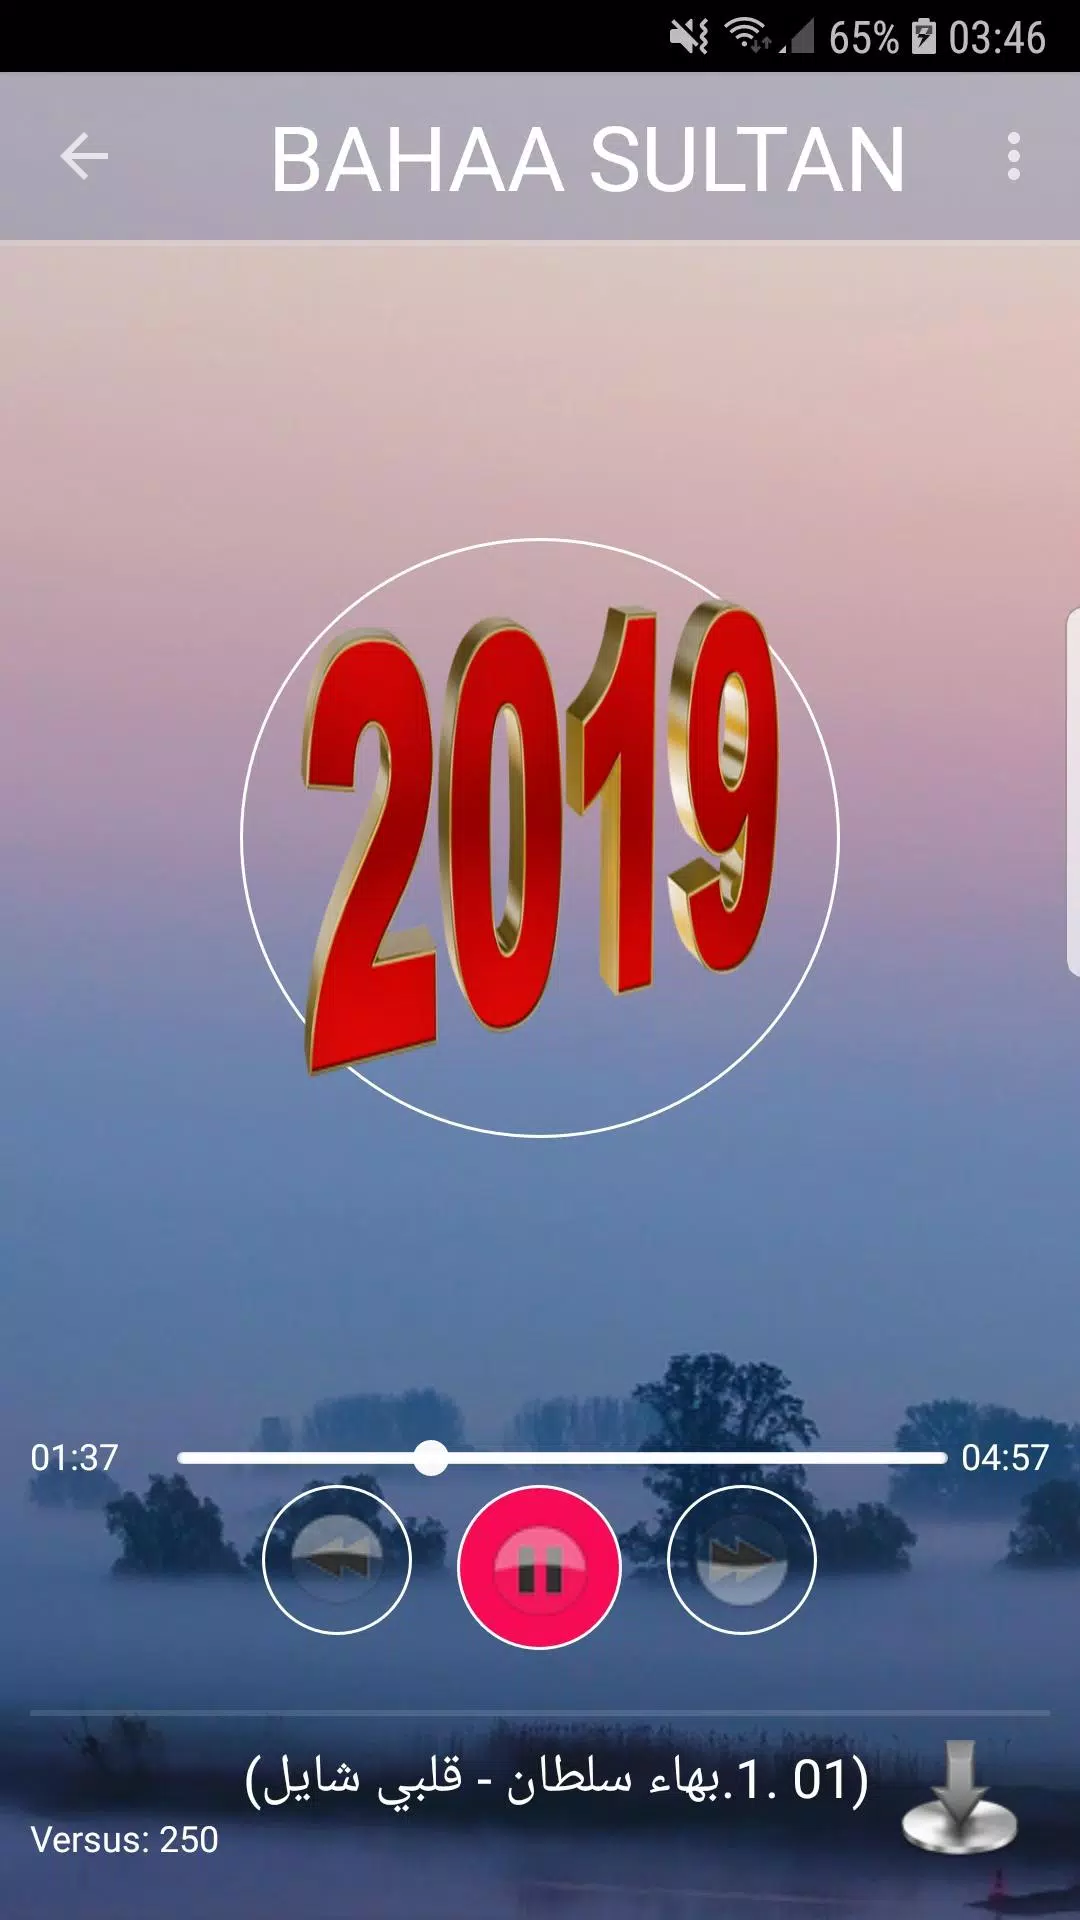 اغاني بهاء سلطان 2019-Aghani bahaa soltan ‎MP3 APK for Android Download